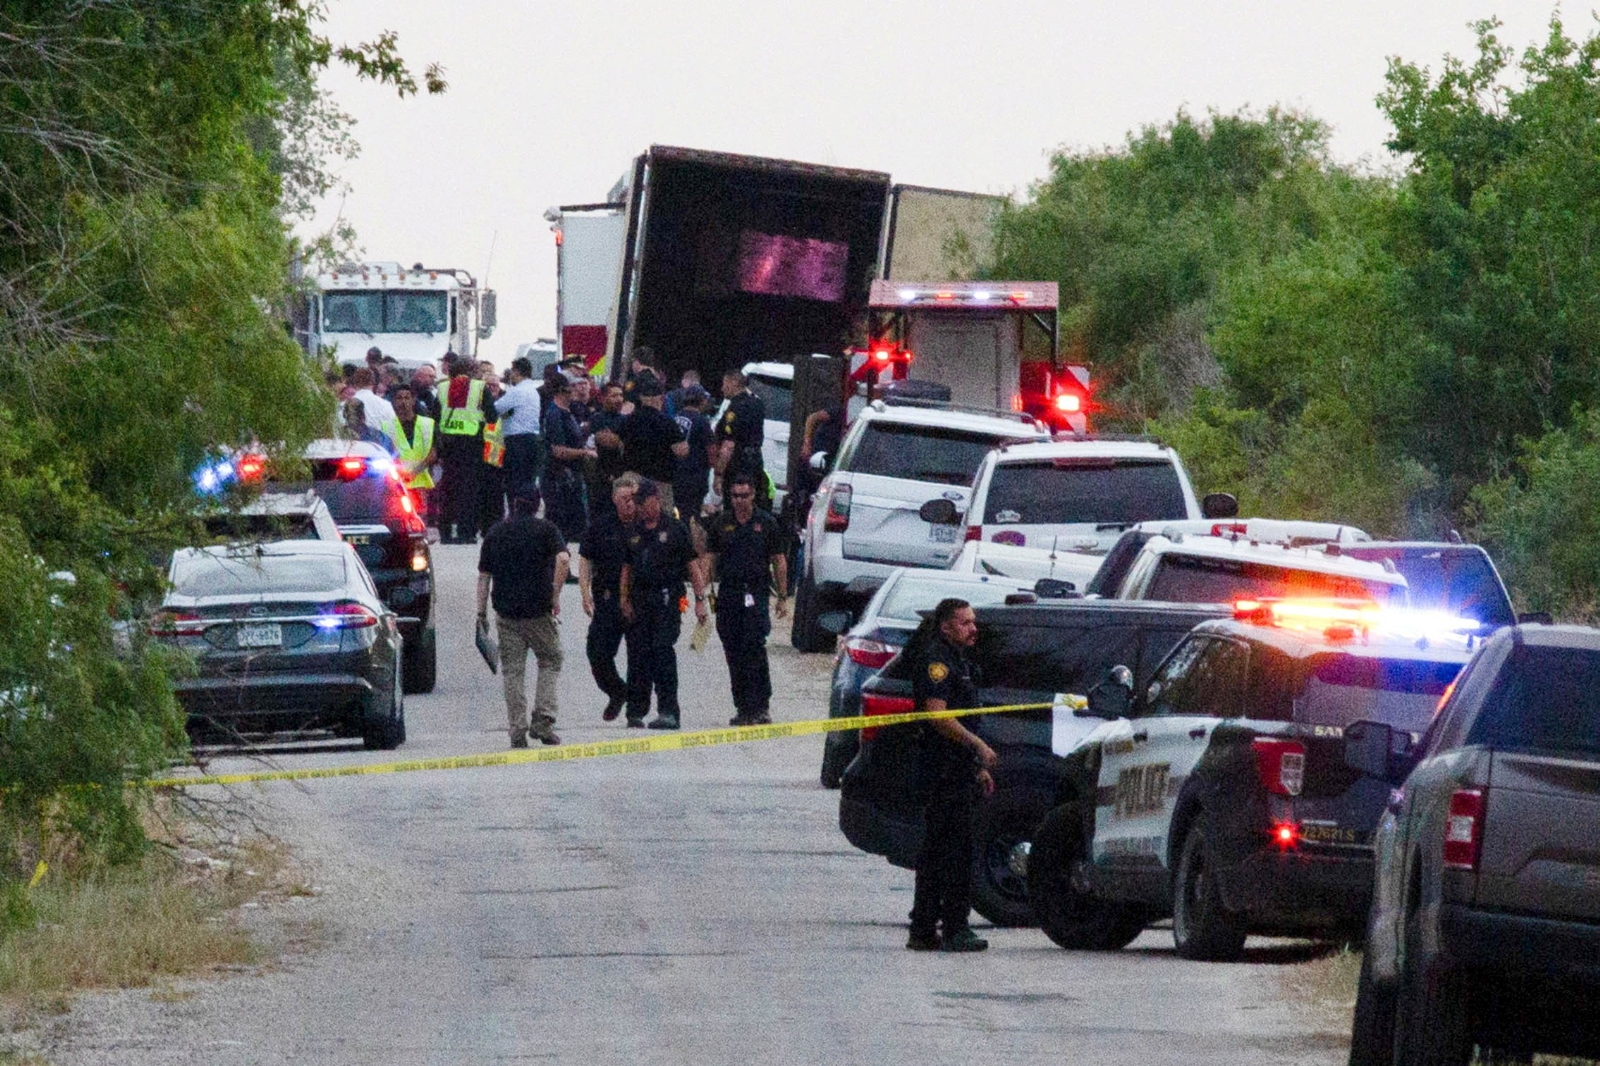 Incrementa a 51 la cifra de migrantes muertos en el interior de un tráiler en Texas